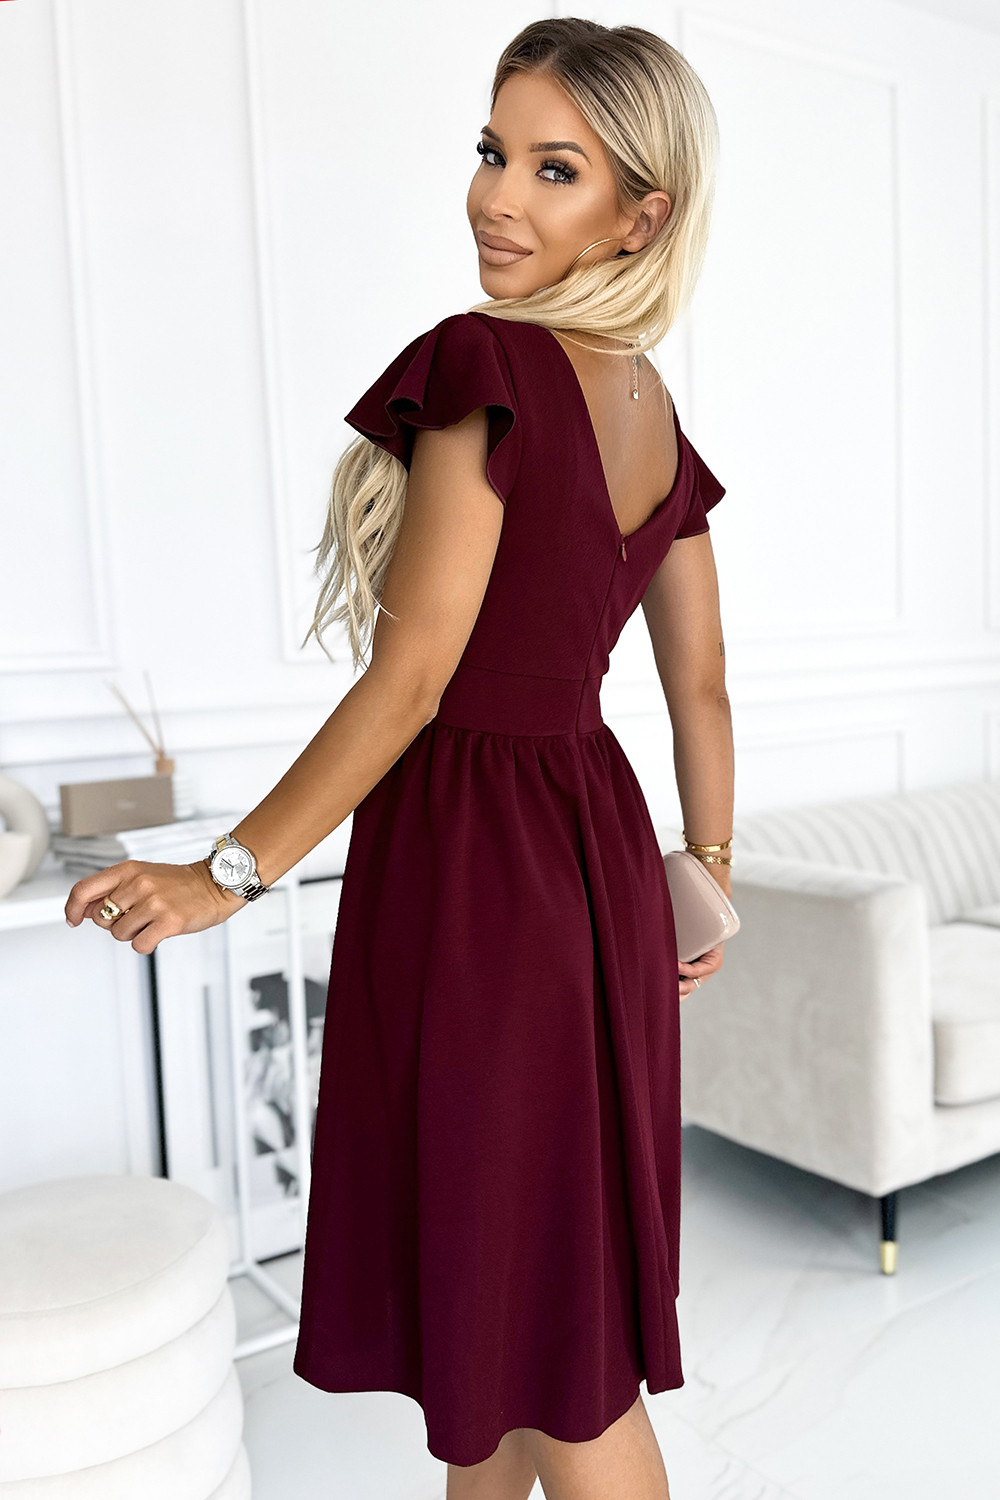 MATILDE - Dámské šaty ve vínové bordó barvě s výstřihem a krátkými rukávy 425-4 M